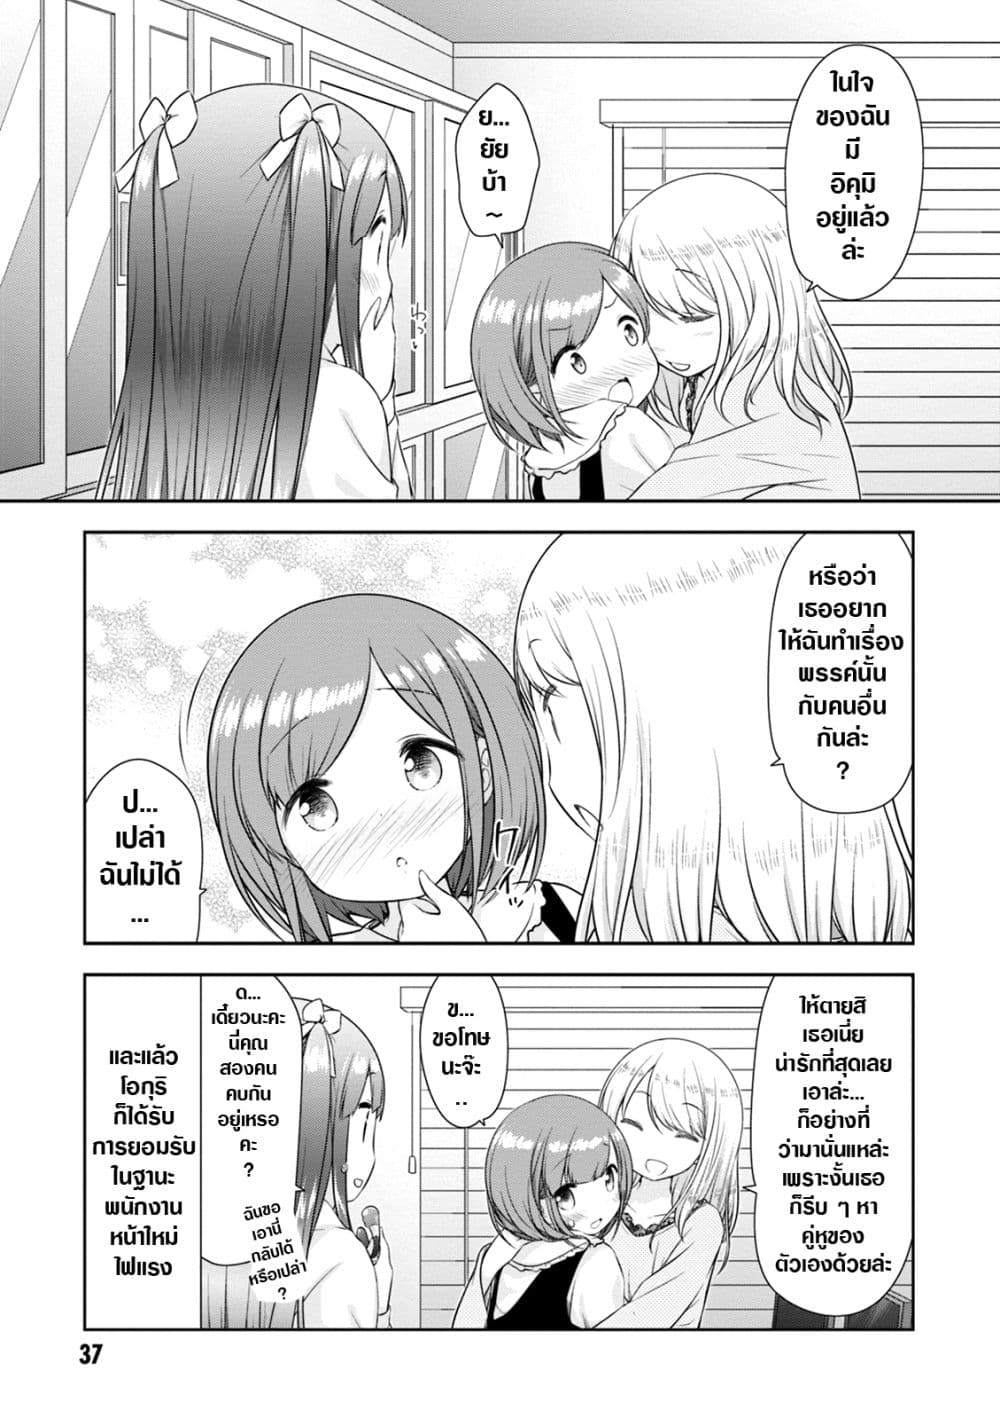 A Girl Meets Sex Toys Akane Oguri Indulge In Onanism2 (17)